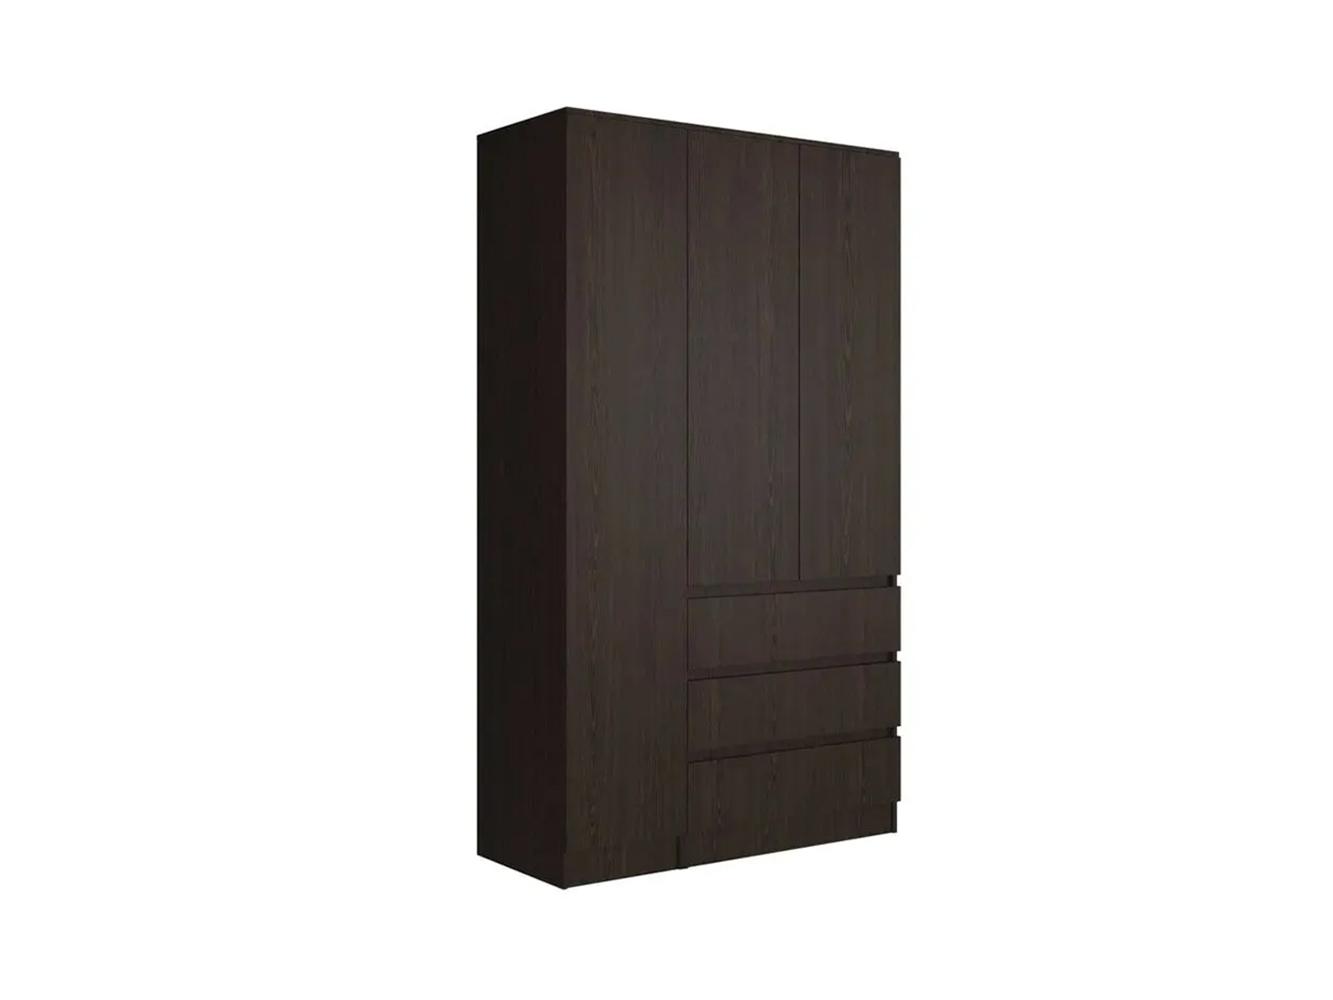 Распашной шкаф Мальм 314 brown ИКЕА (IKEA) изображение товара